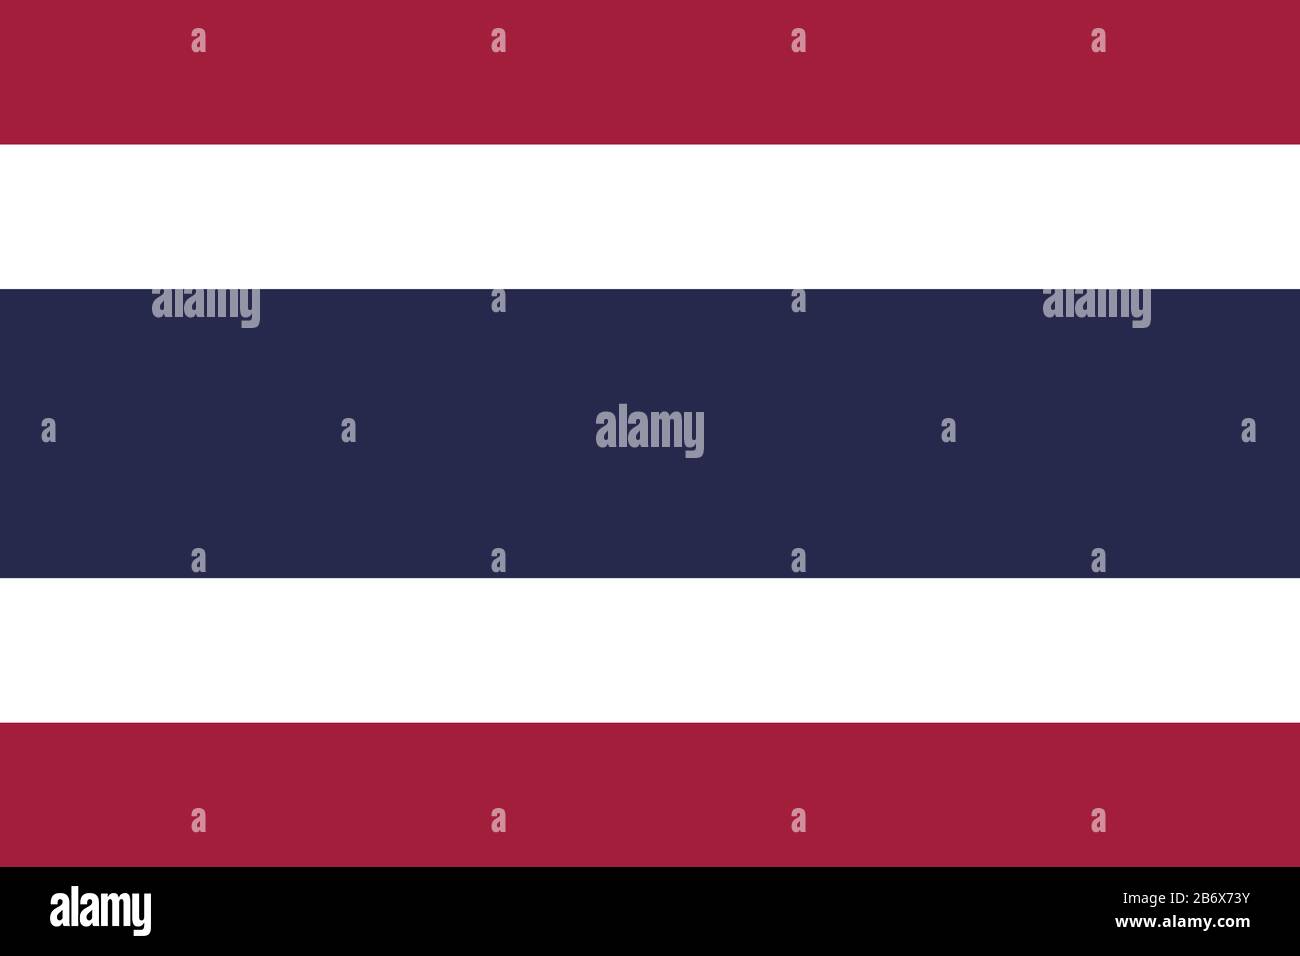 Flagge Thailands - Standardverhältnis der thailändischen Flagge - True RGB-Farbmodus Stockfoto